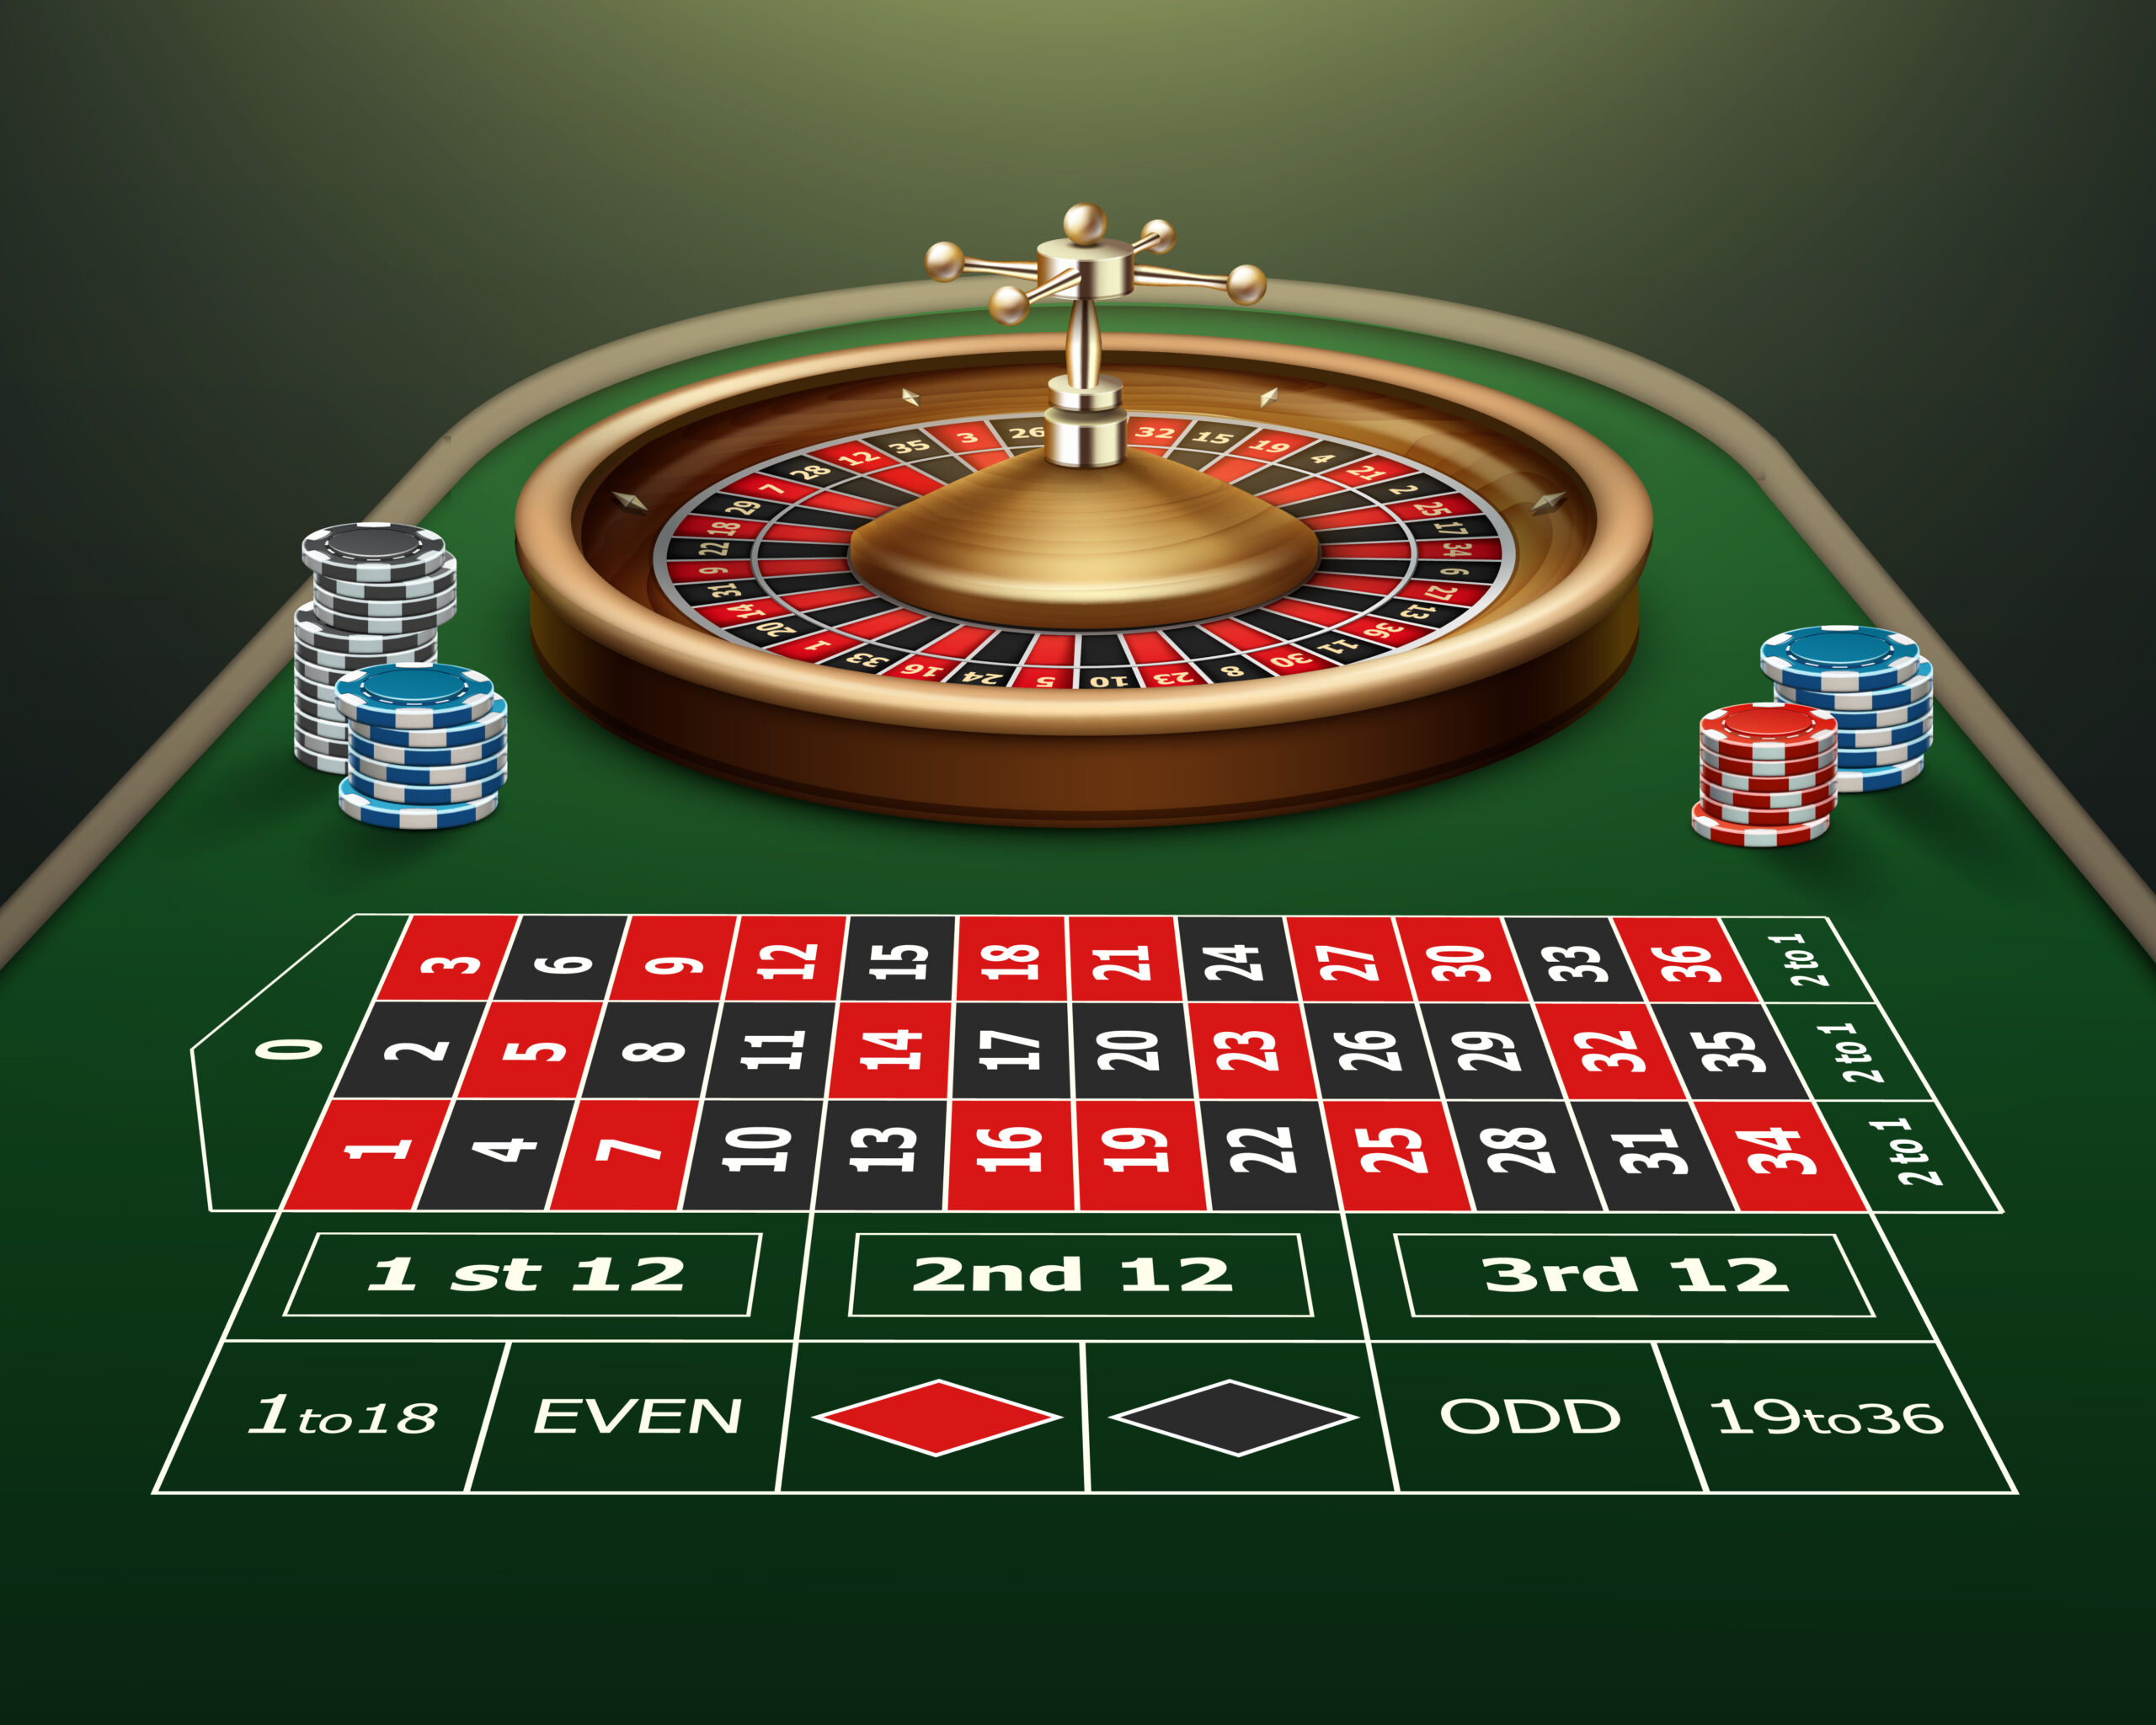 Tod, seriöse Online Casinos Österreich und Steuern